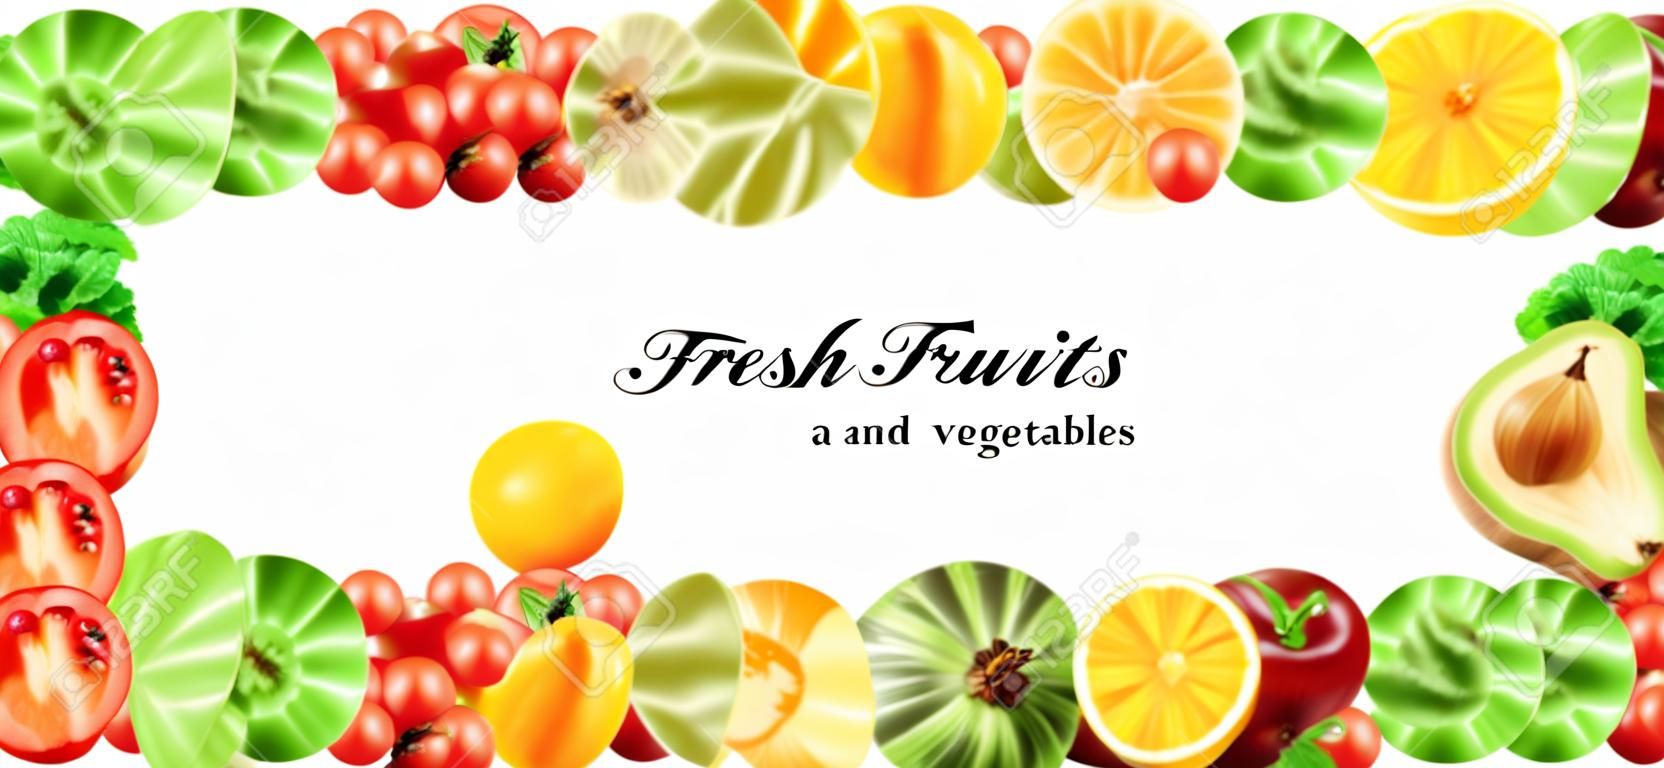 Frutta fresca e verdura. Concetto di cibo sano